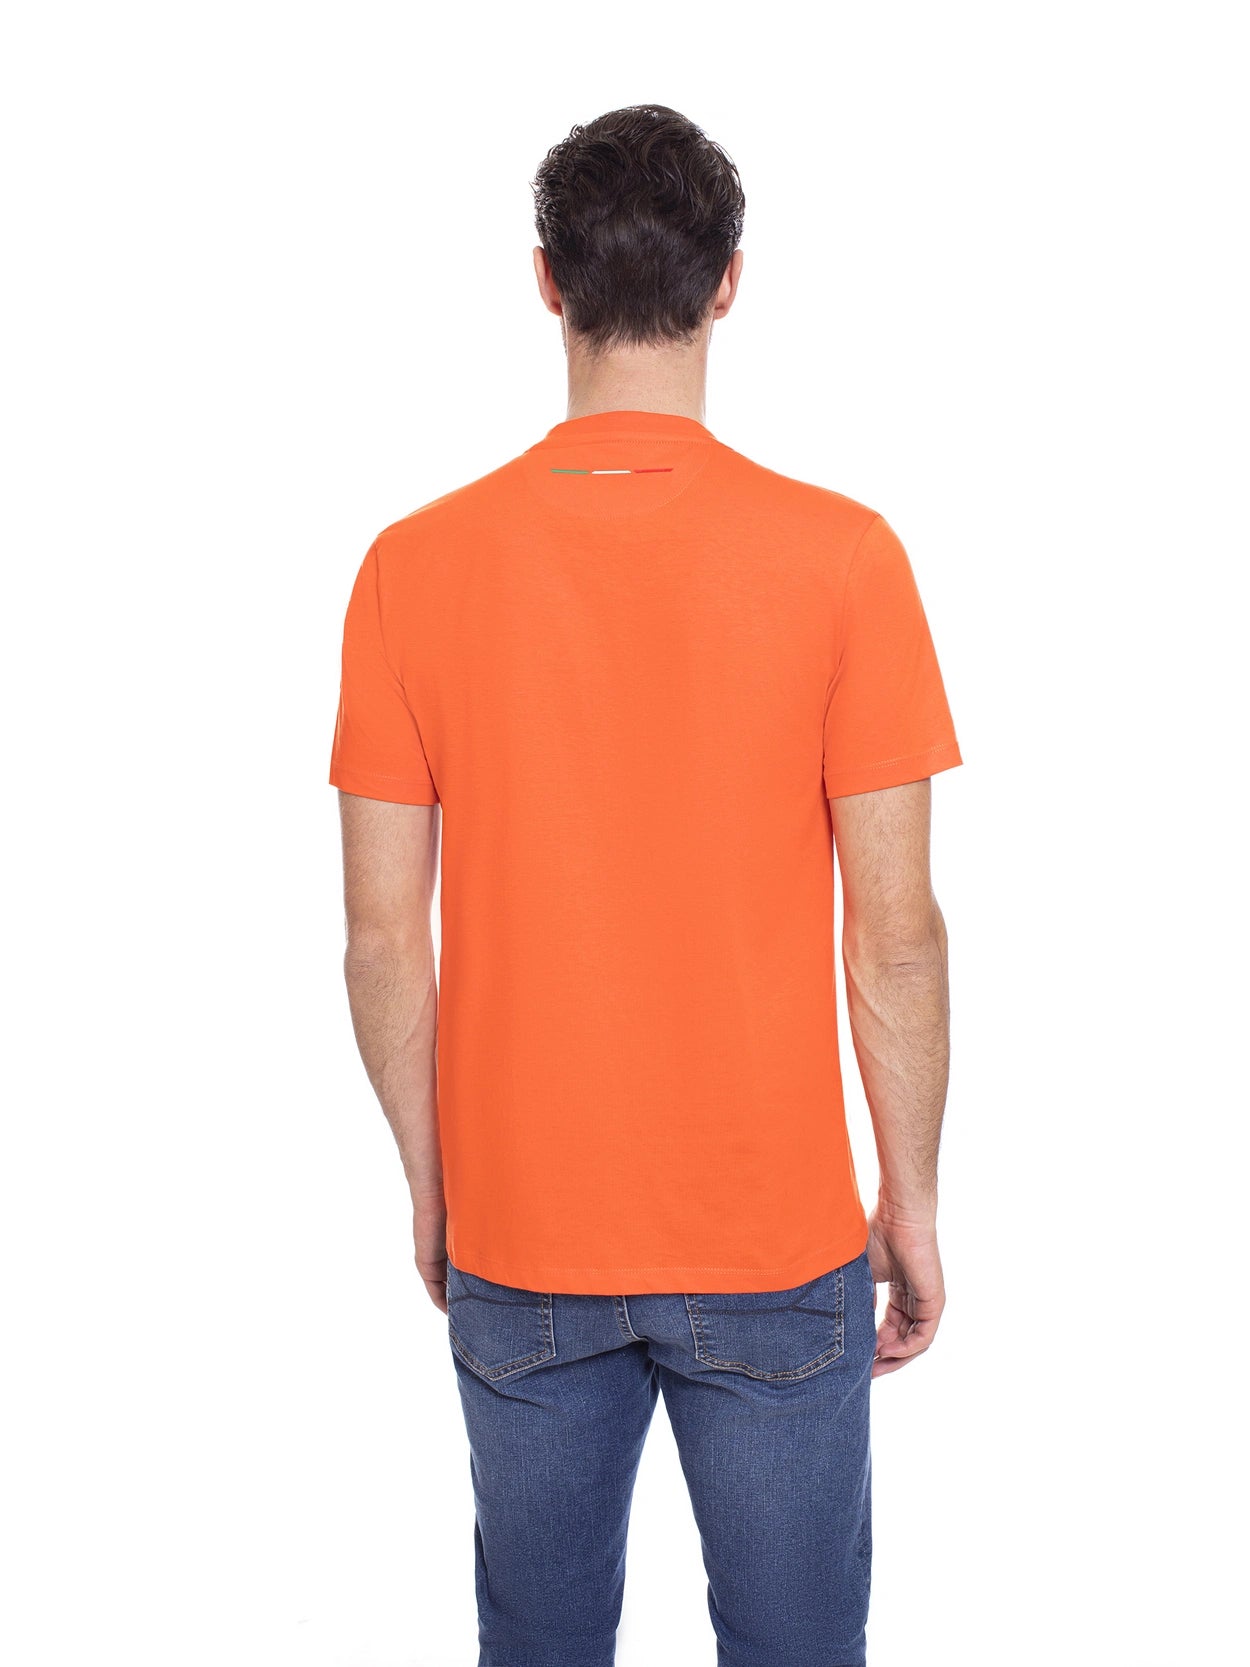 T-Shirt Automobili Lamborghini con Logo / Arancione - Ideal Moda